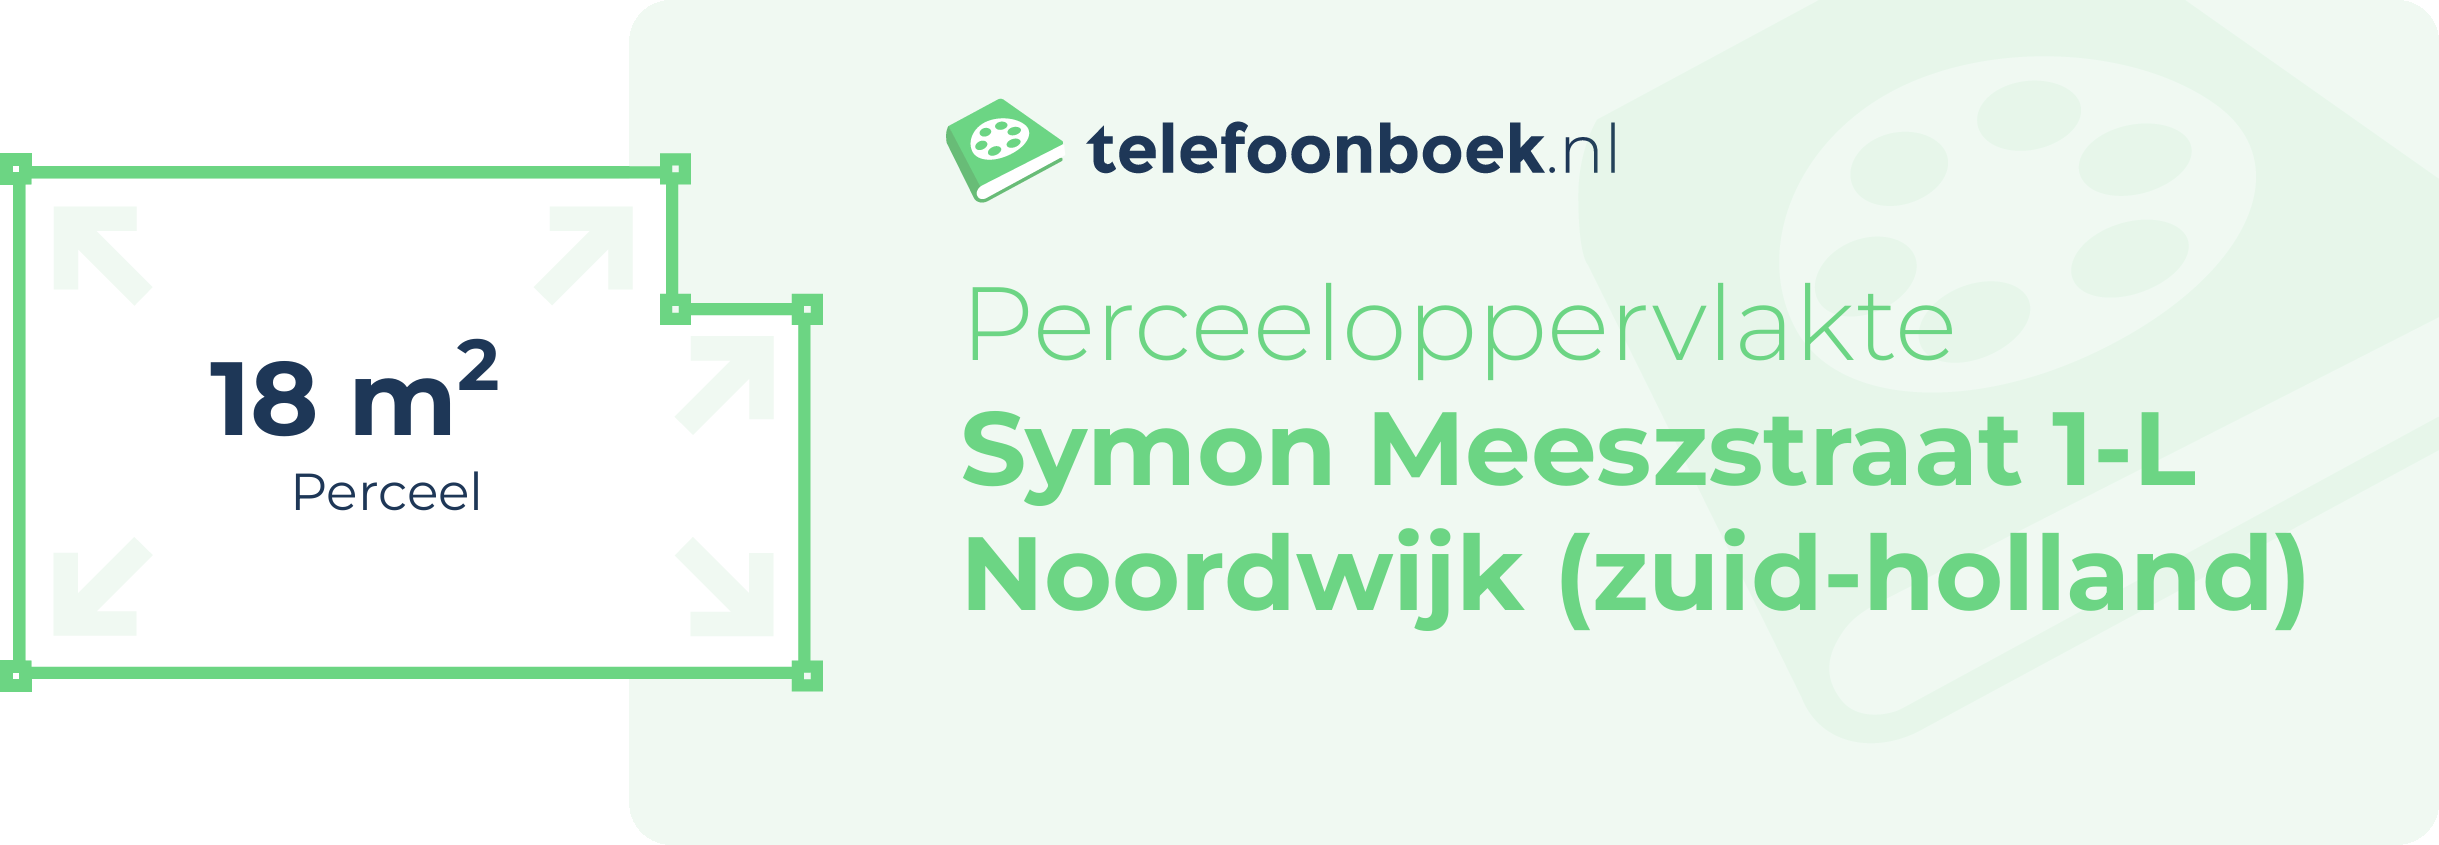 Perceeloppervlakte Symon Meeszstraat 1-L Noordwijk (Zuid-Holland)